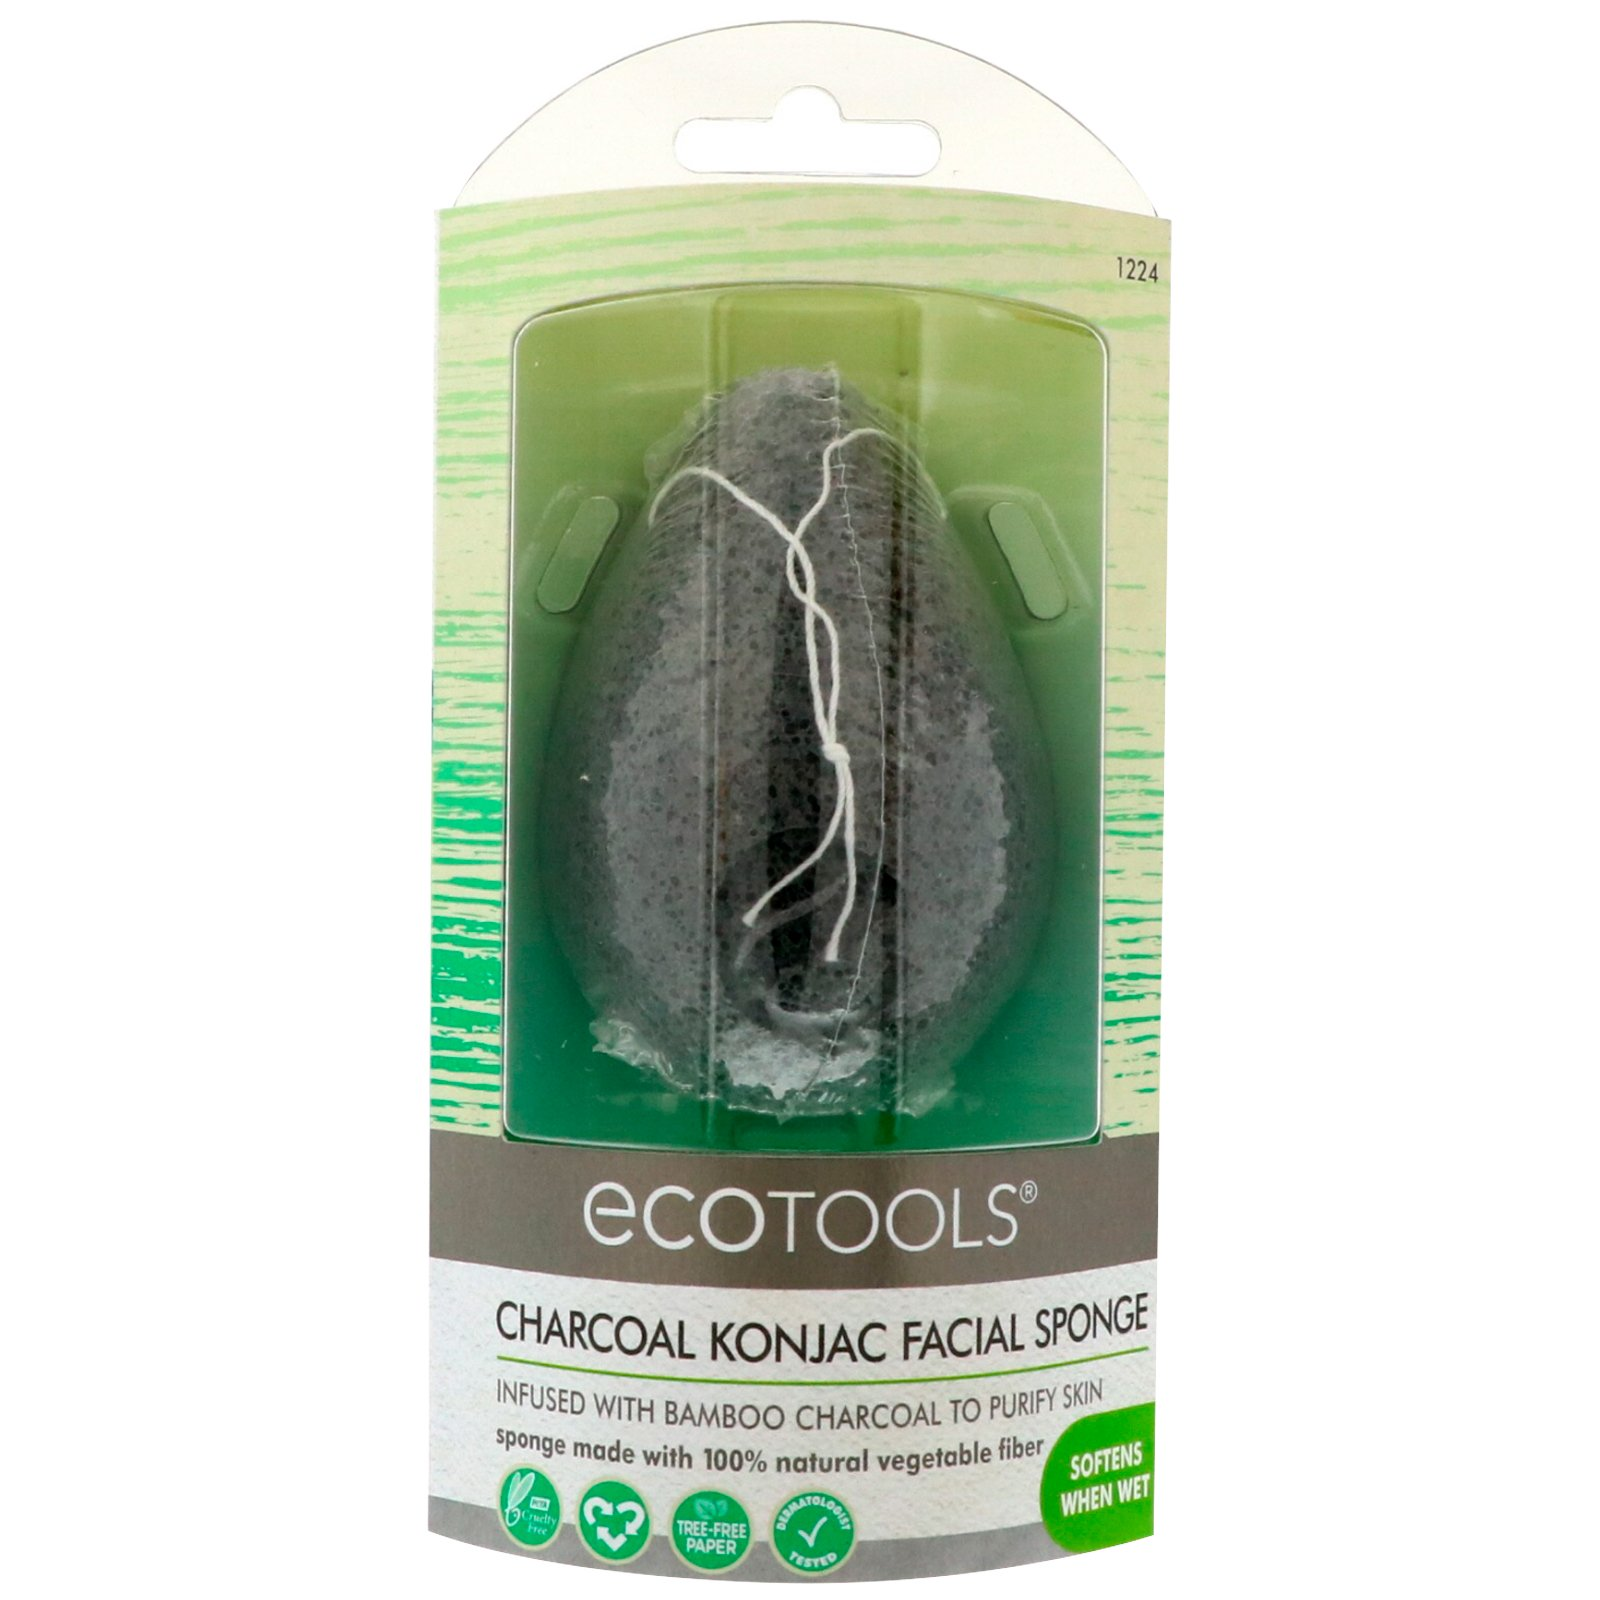 ecotools-charcoal-konjac-facial-sponge